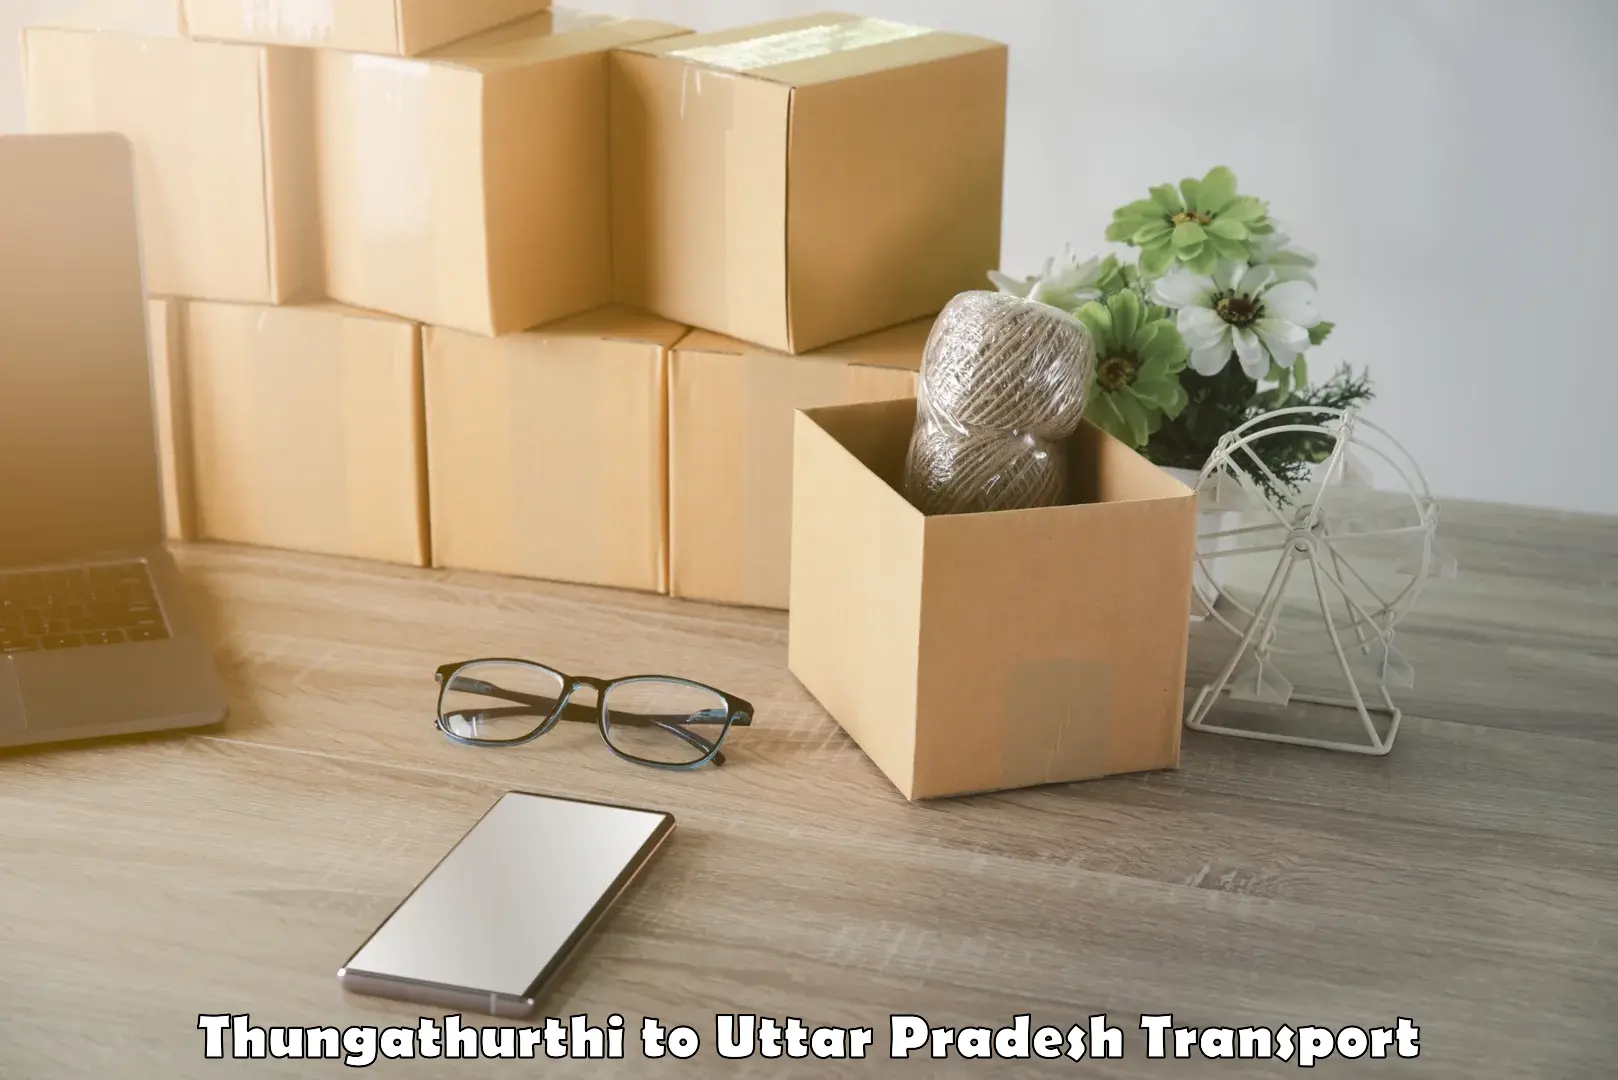 Transportation services Thungathurthi to Salemgarh